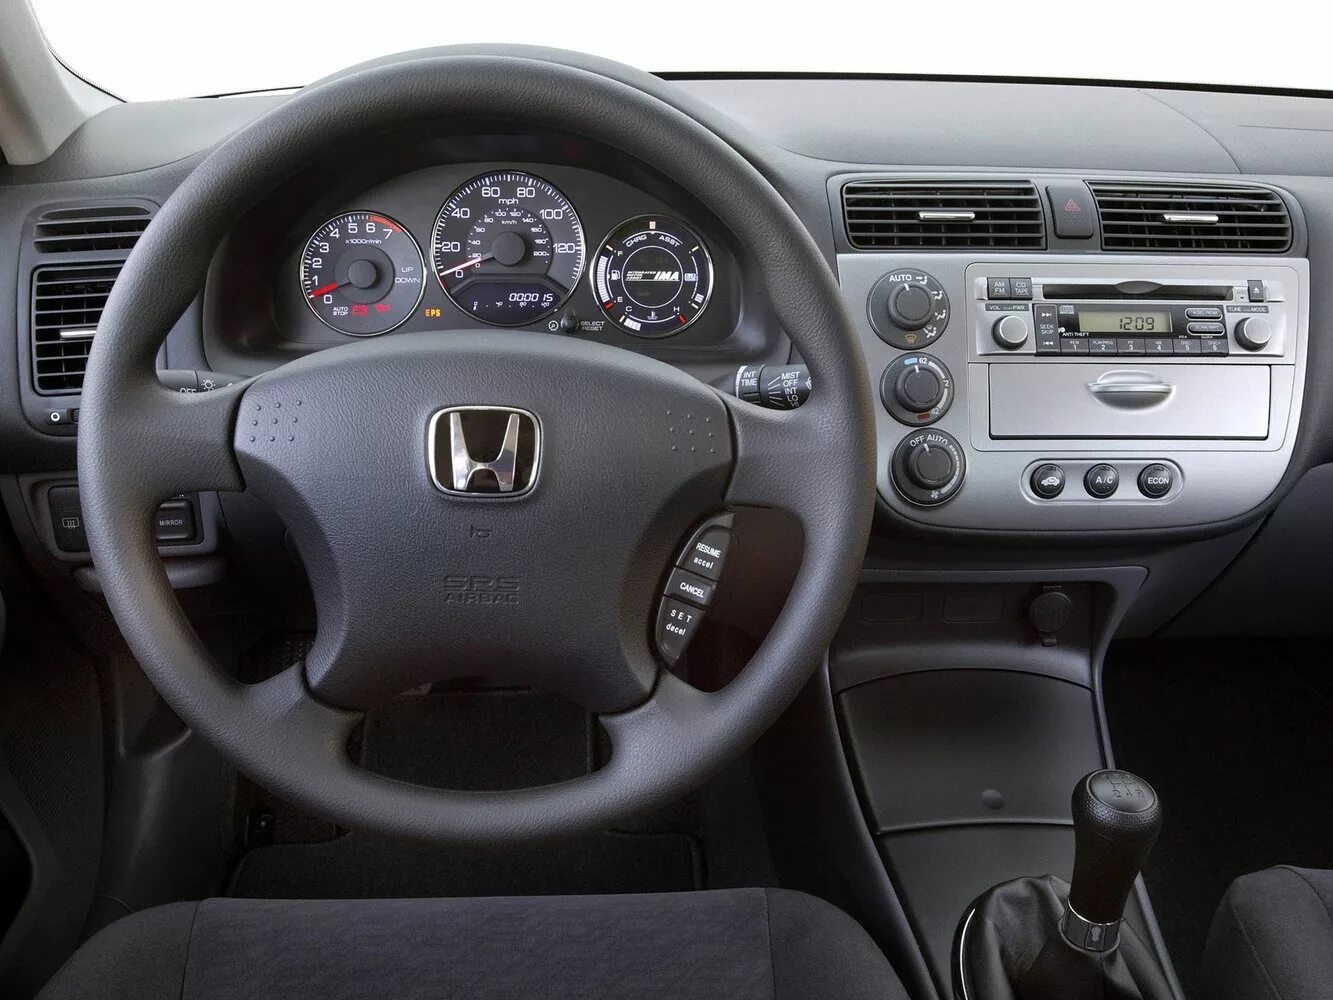 В 2003 2005 г. Honda Civic 2005 седан салон. Honda Civic 2001 седан салон. Honda Civic 7 2003. Honda Civic 7 поколение седан.